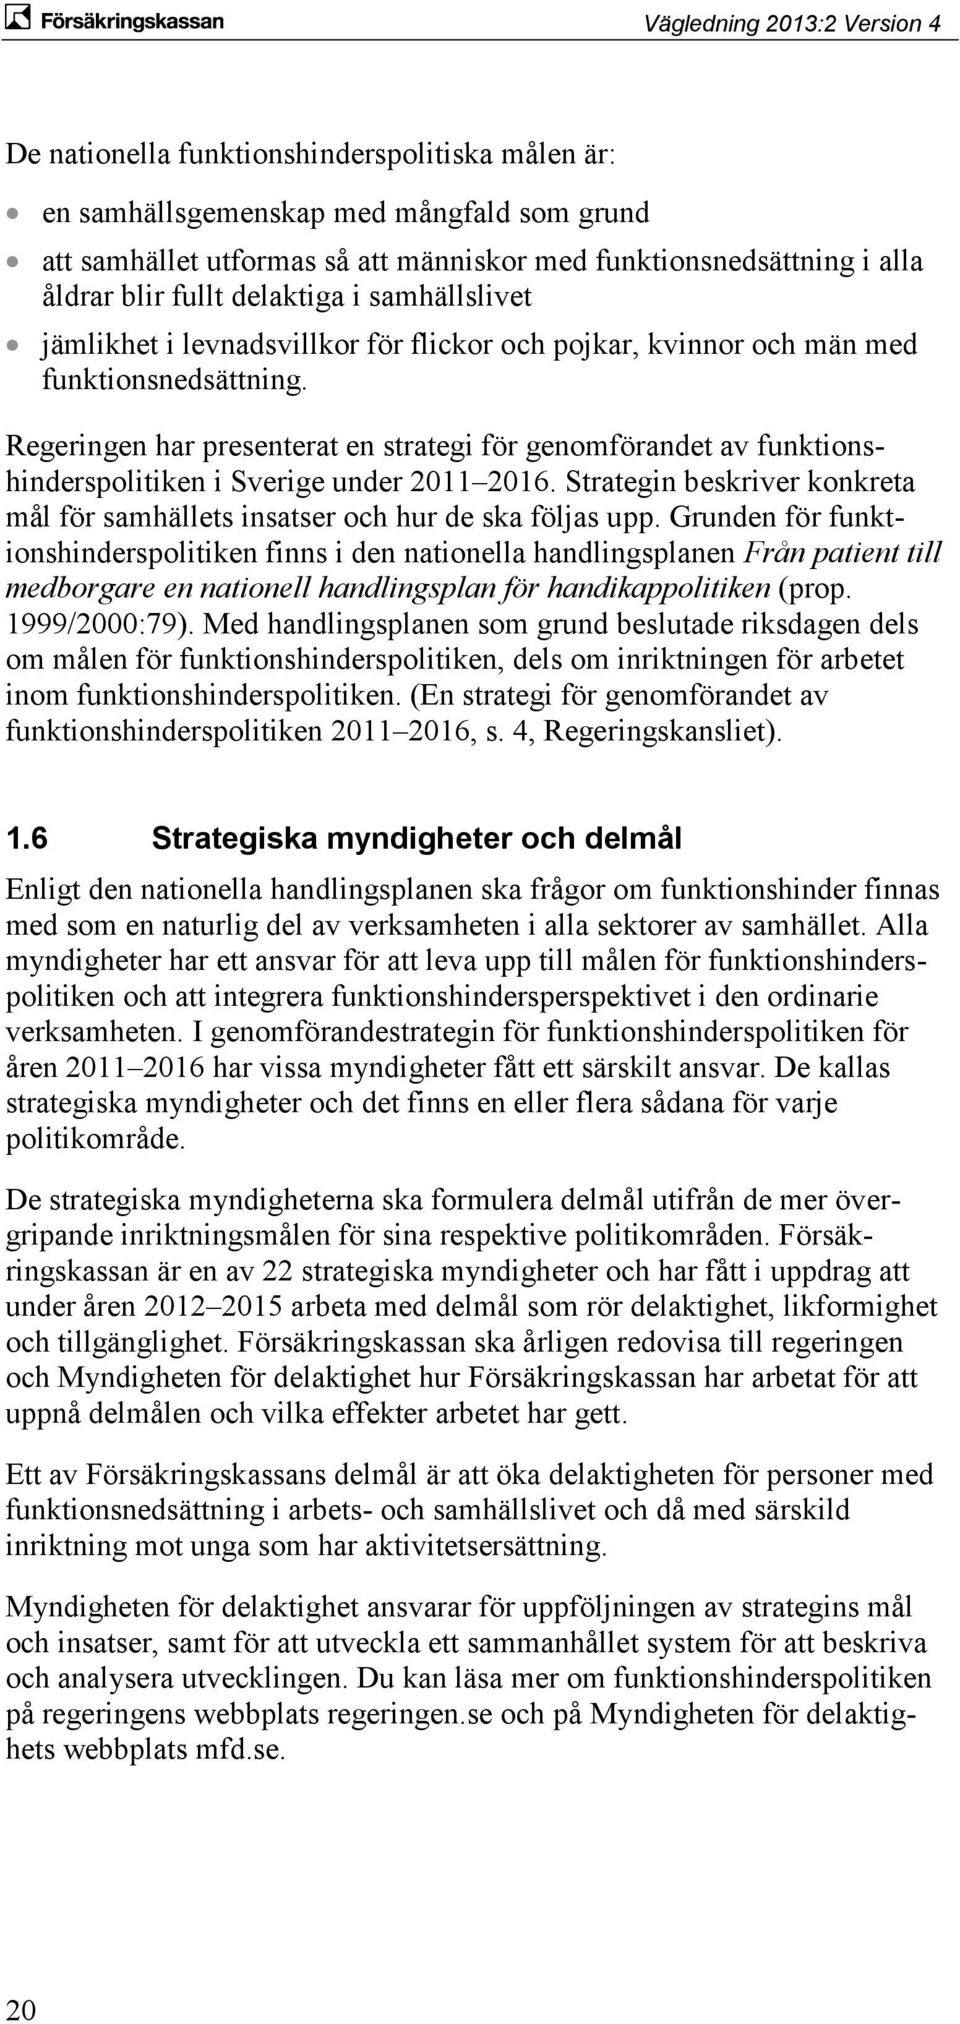 Regeringen har presenterat en strategi för genomförandet av funktionshinderspolitiken i Sverige under 2011 2016. Strategin beskriver konkreta mål för samhällets insatser och hur de ska följas upp.